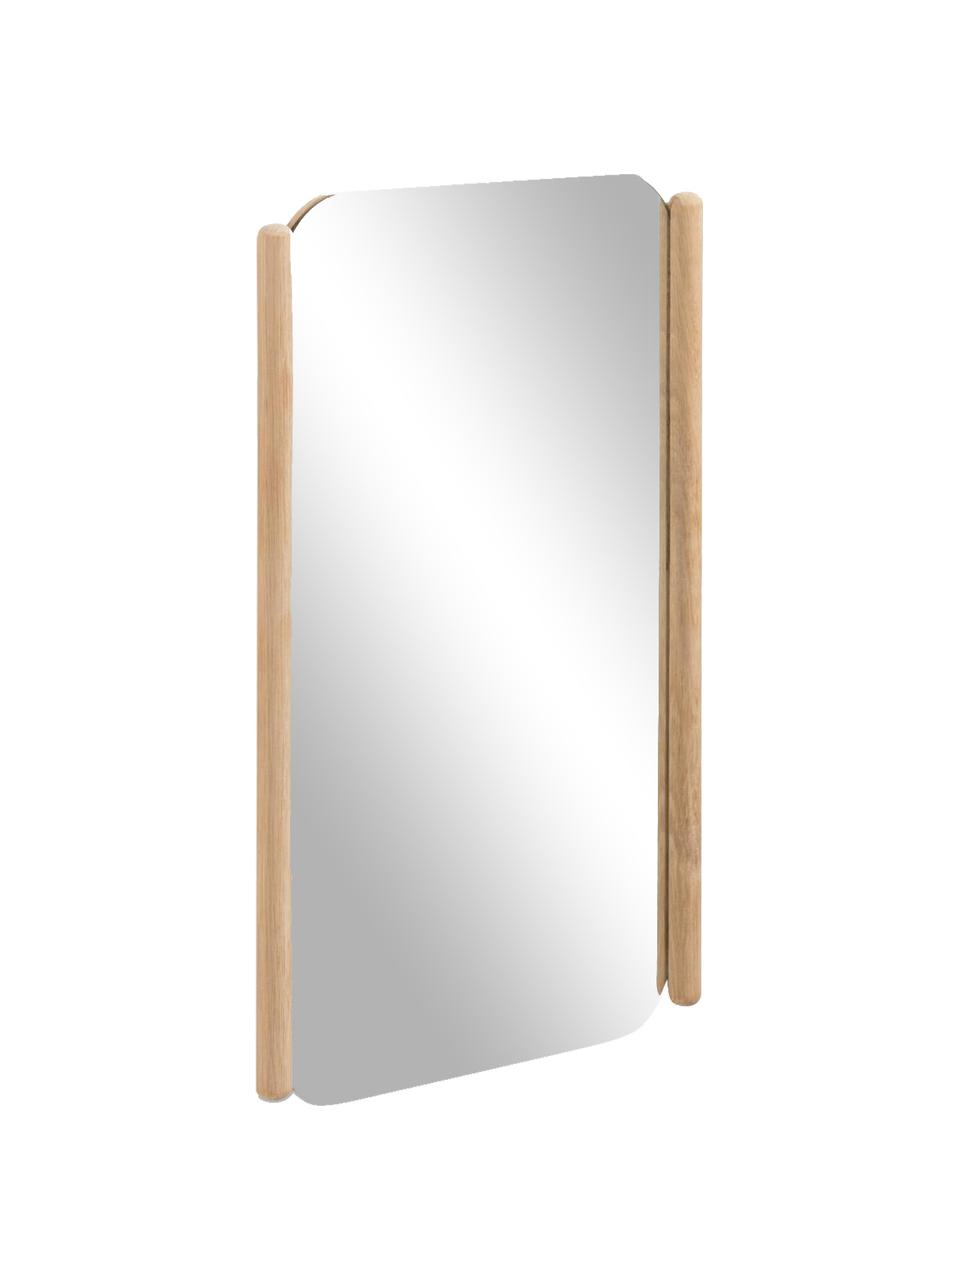 Eckiger Wandspiegel Natane mit hellbraunem Holzrahmen, Rahmen: Holz, Rückseite: Mitteldichte Holzfaserpla, Spiegelfläche: Spiegelglas, Beige, B 34 x H 54 cm